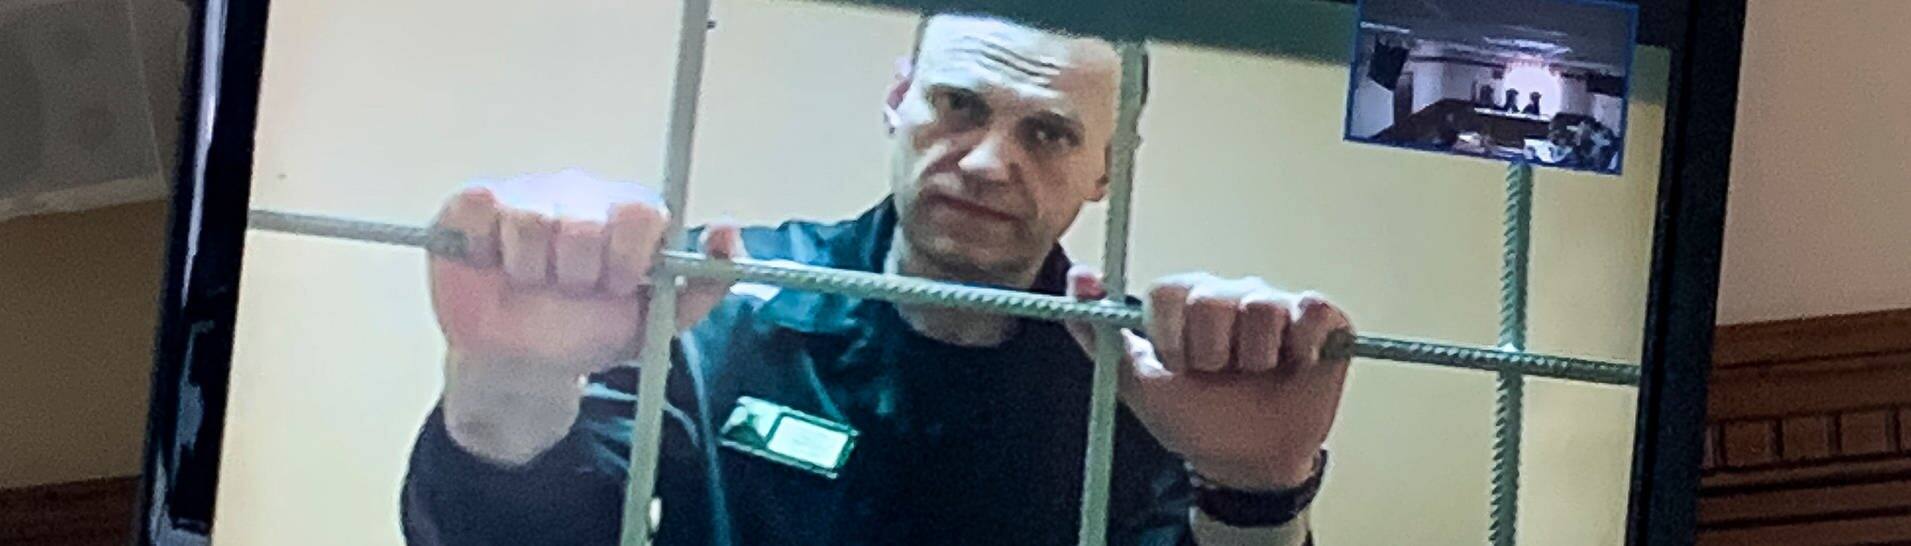 Alexej Nawalny  wird in einem Gerichtssaal in Wladimir per Videoverbindung aus dem Gefängnis zugeschaltet und ist auf einem Bildschirm zu sehen. (Foto: dpa Bildfunk, picture alliance/dpa/AP | Vladimir Kondrashov)